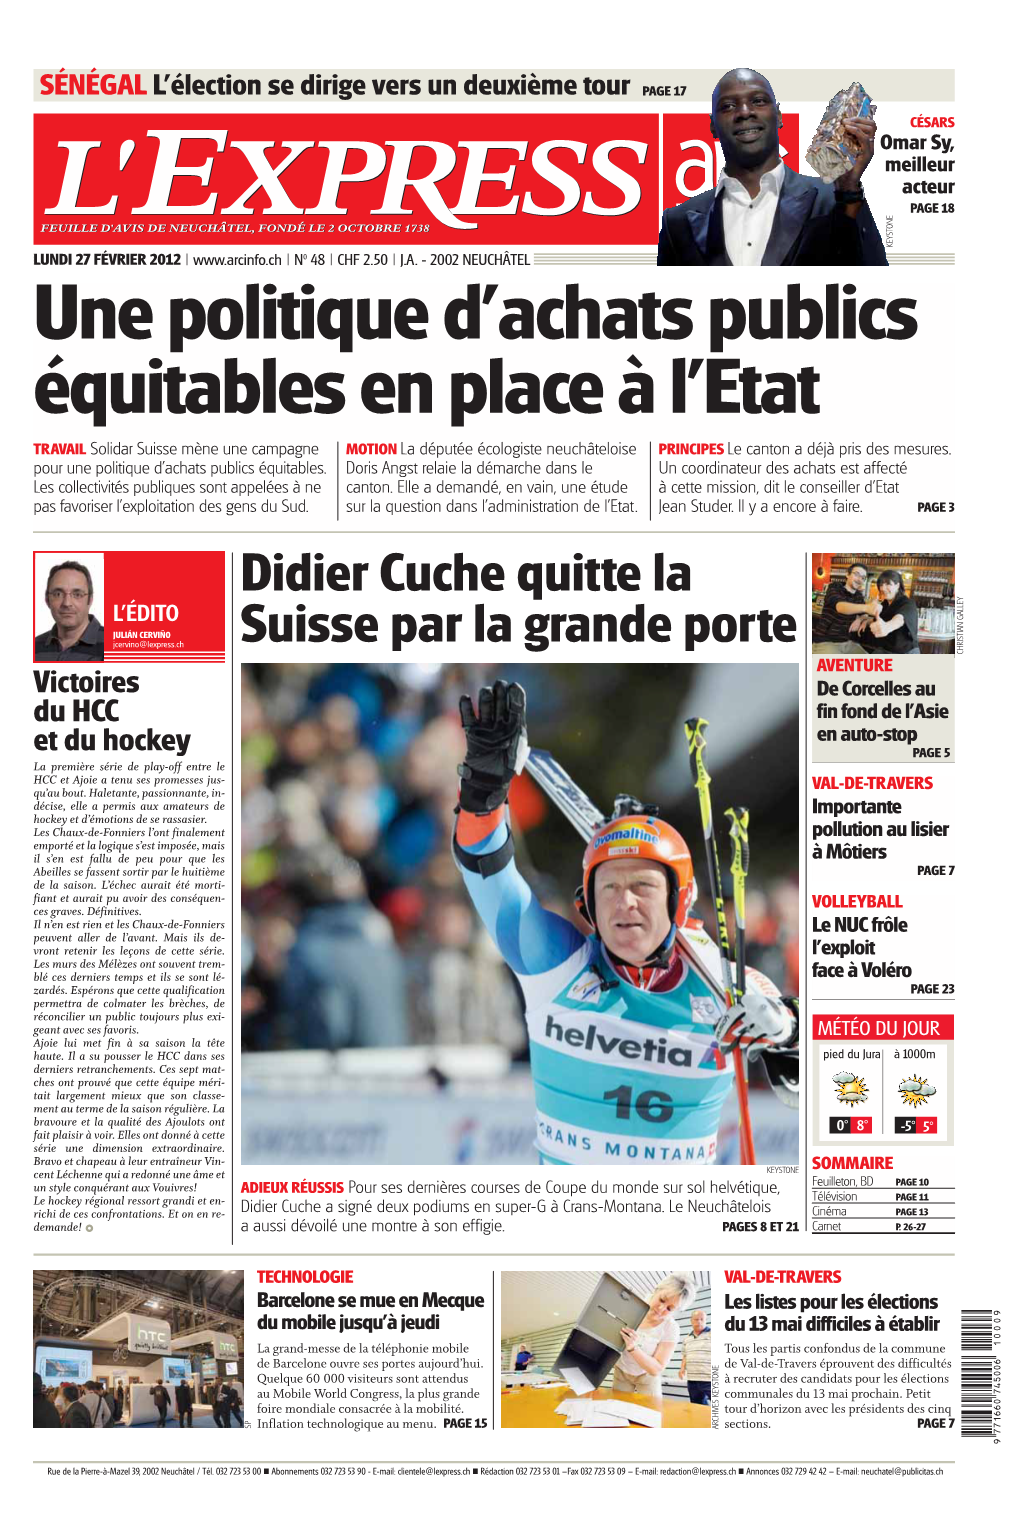 Didier Cuche Quitte La Suisse Par La Grande Porte